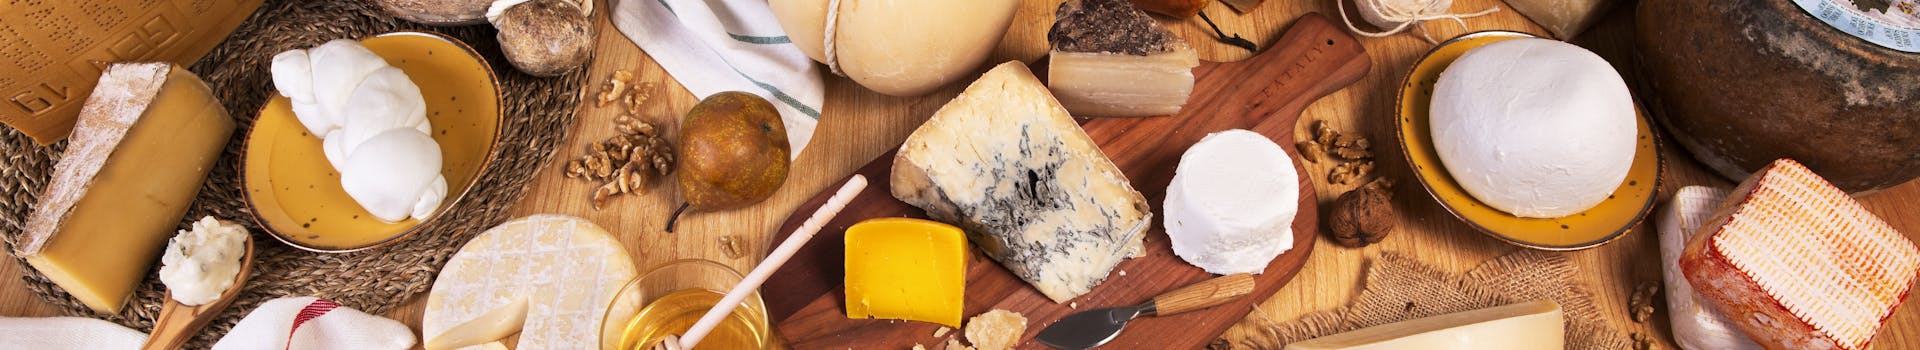 Käse und Wurst aus Italien